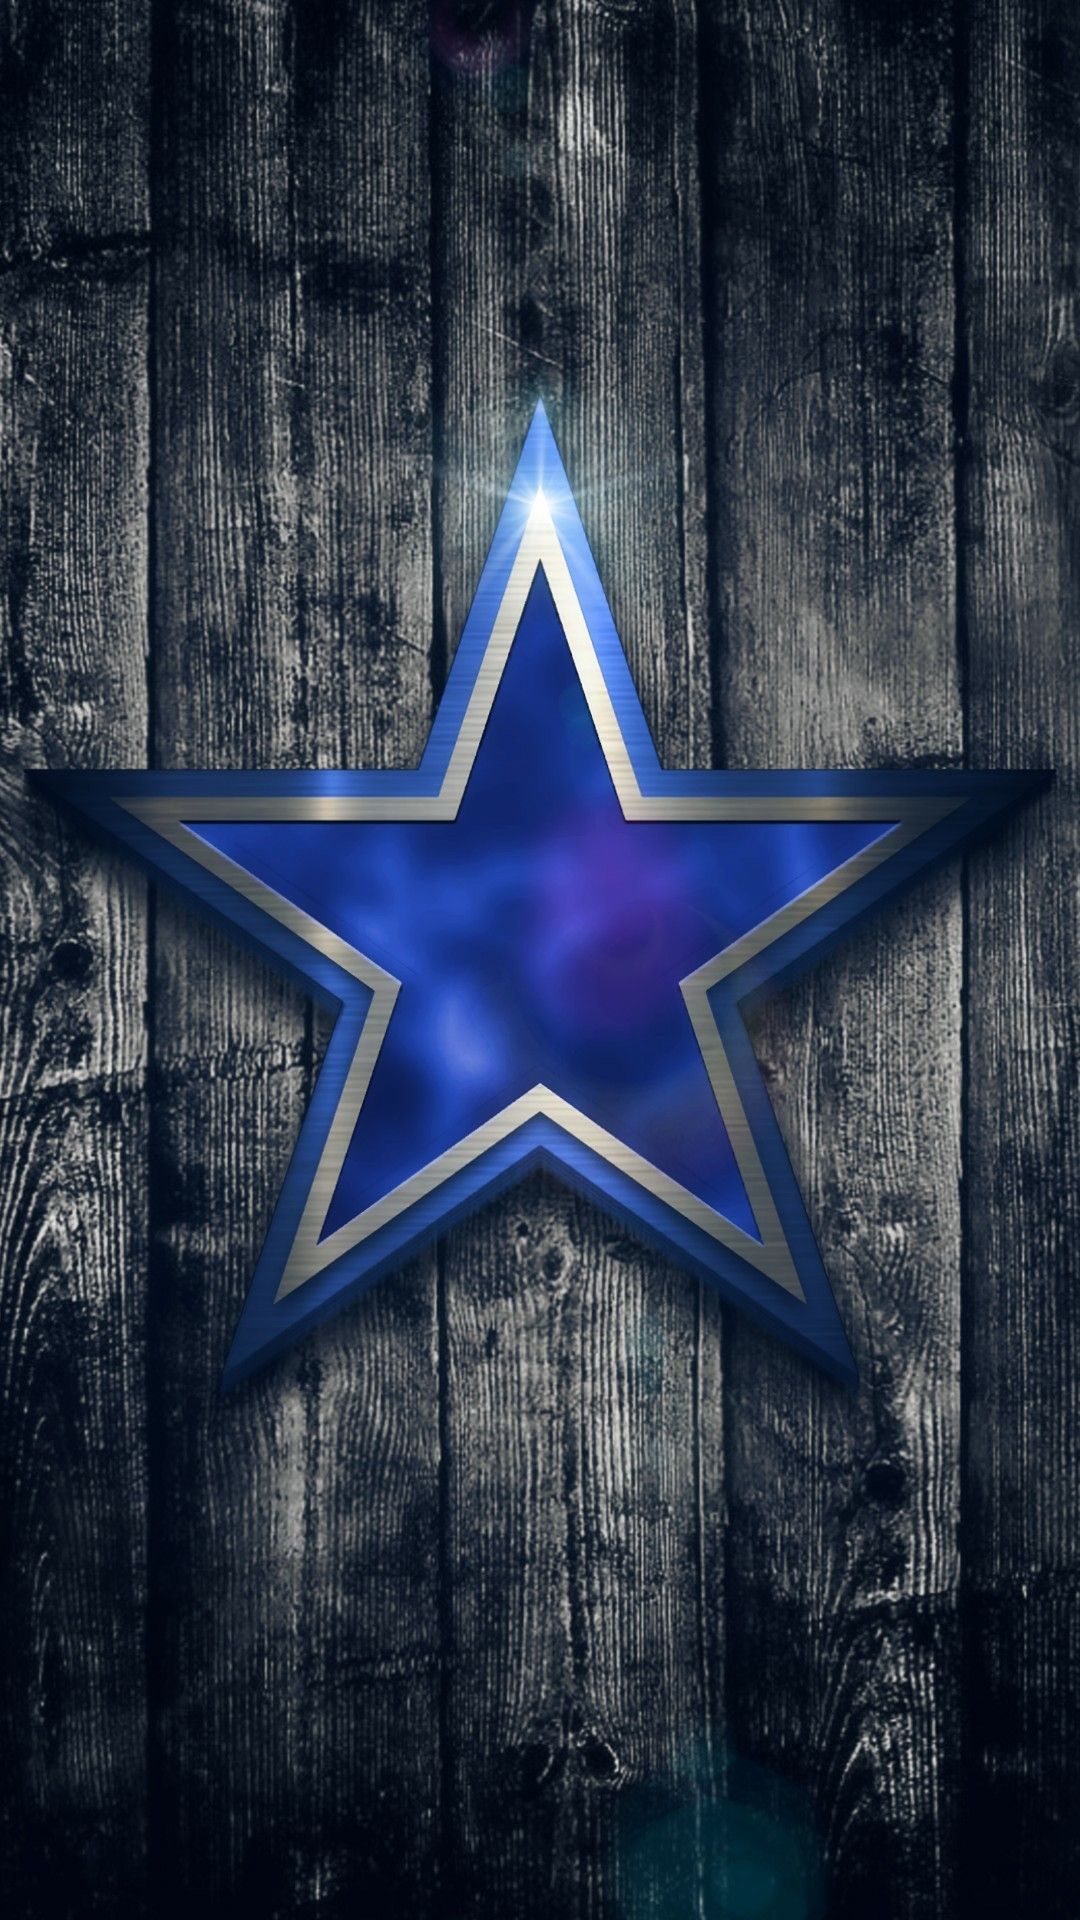 Dallas Cowboys ( Logo Wallpaper ). Dallas cowboys wallpaper, Dallas cowboys logo, Dallas cowboys decor